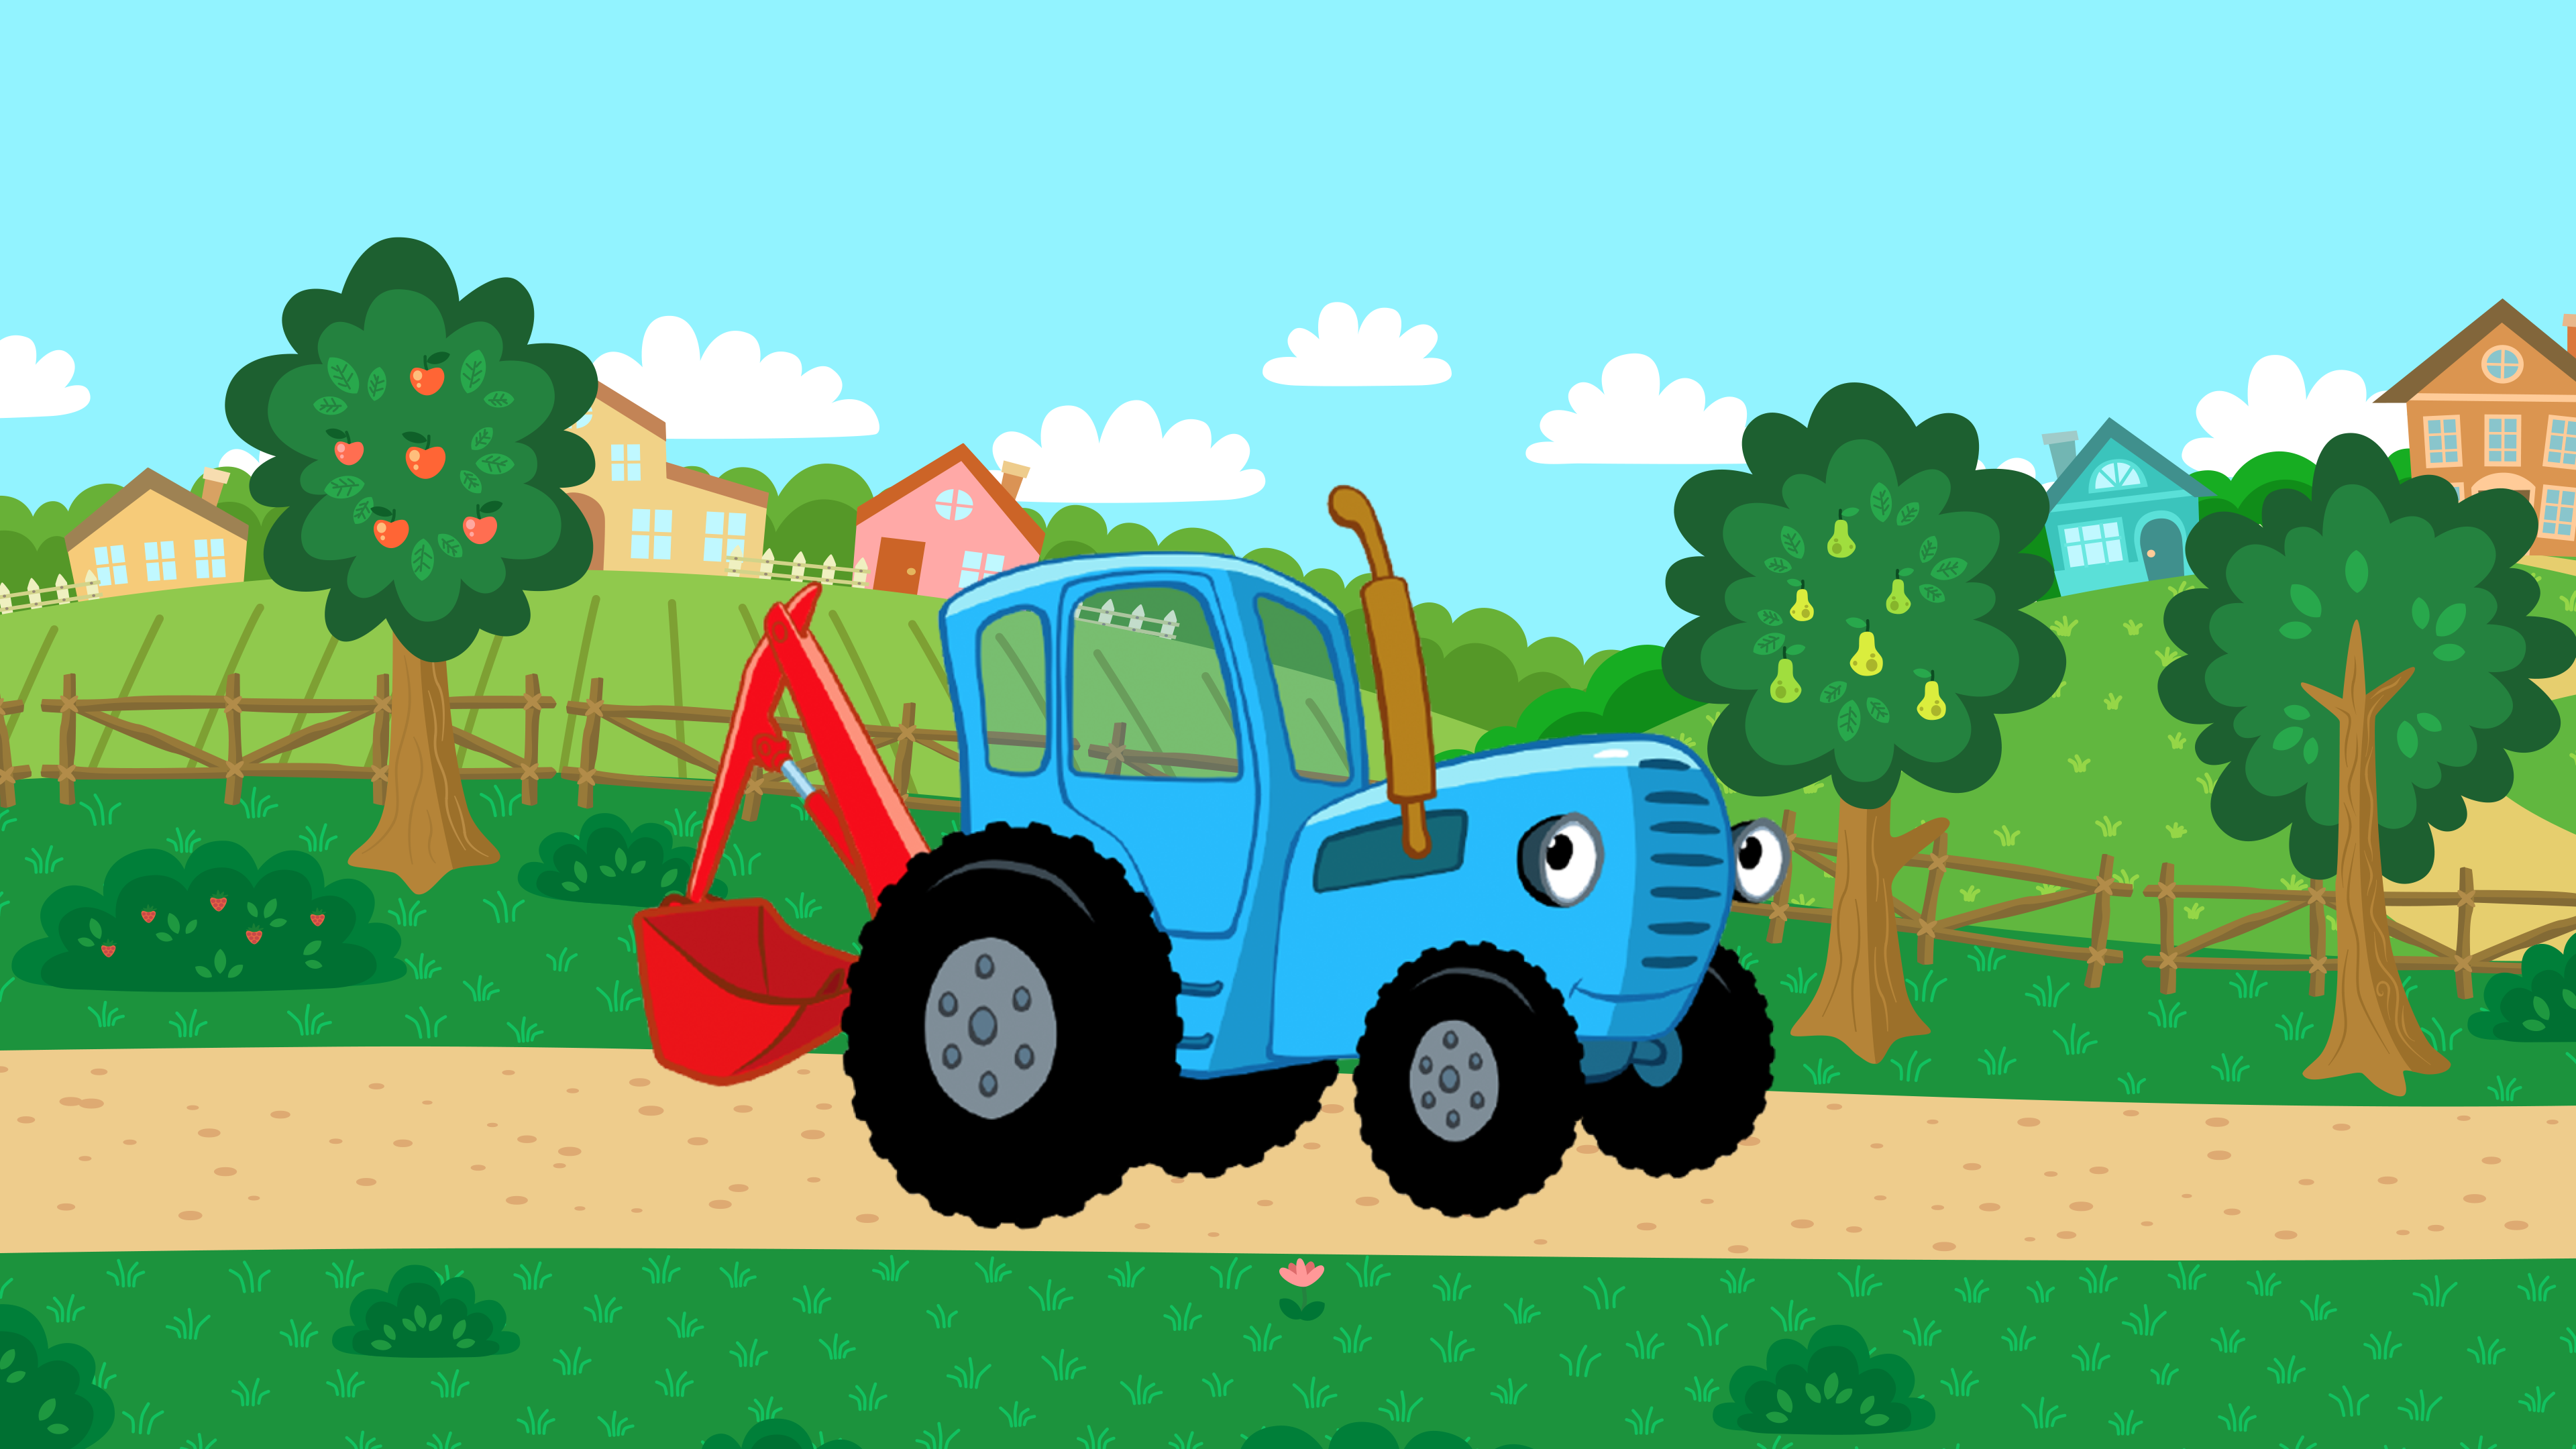 Габор синий трактор. Синего трактора можно